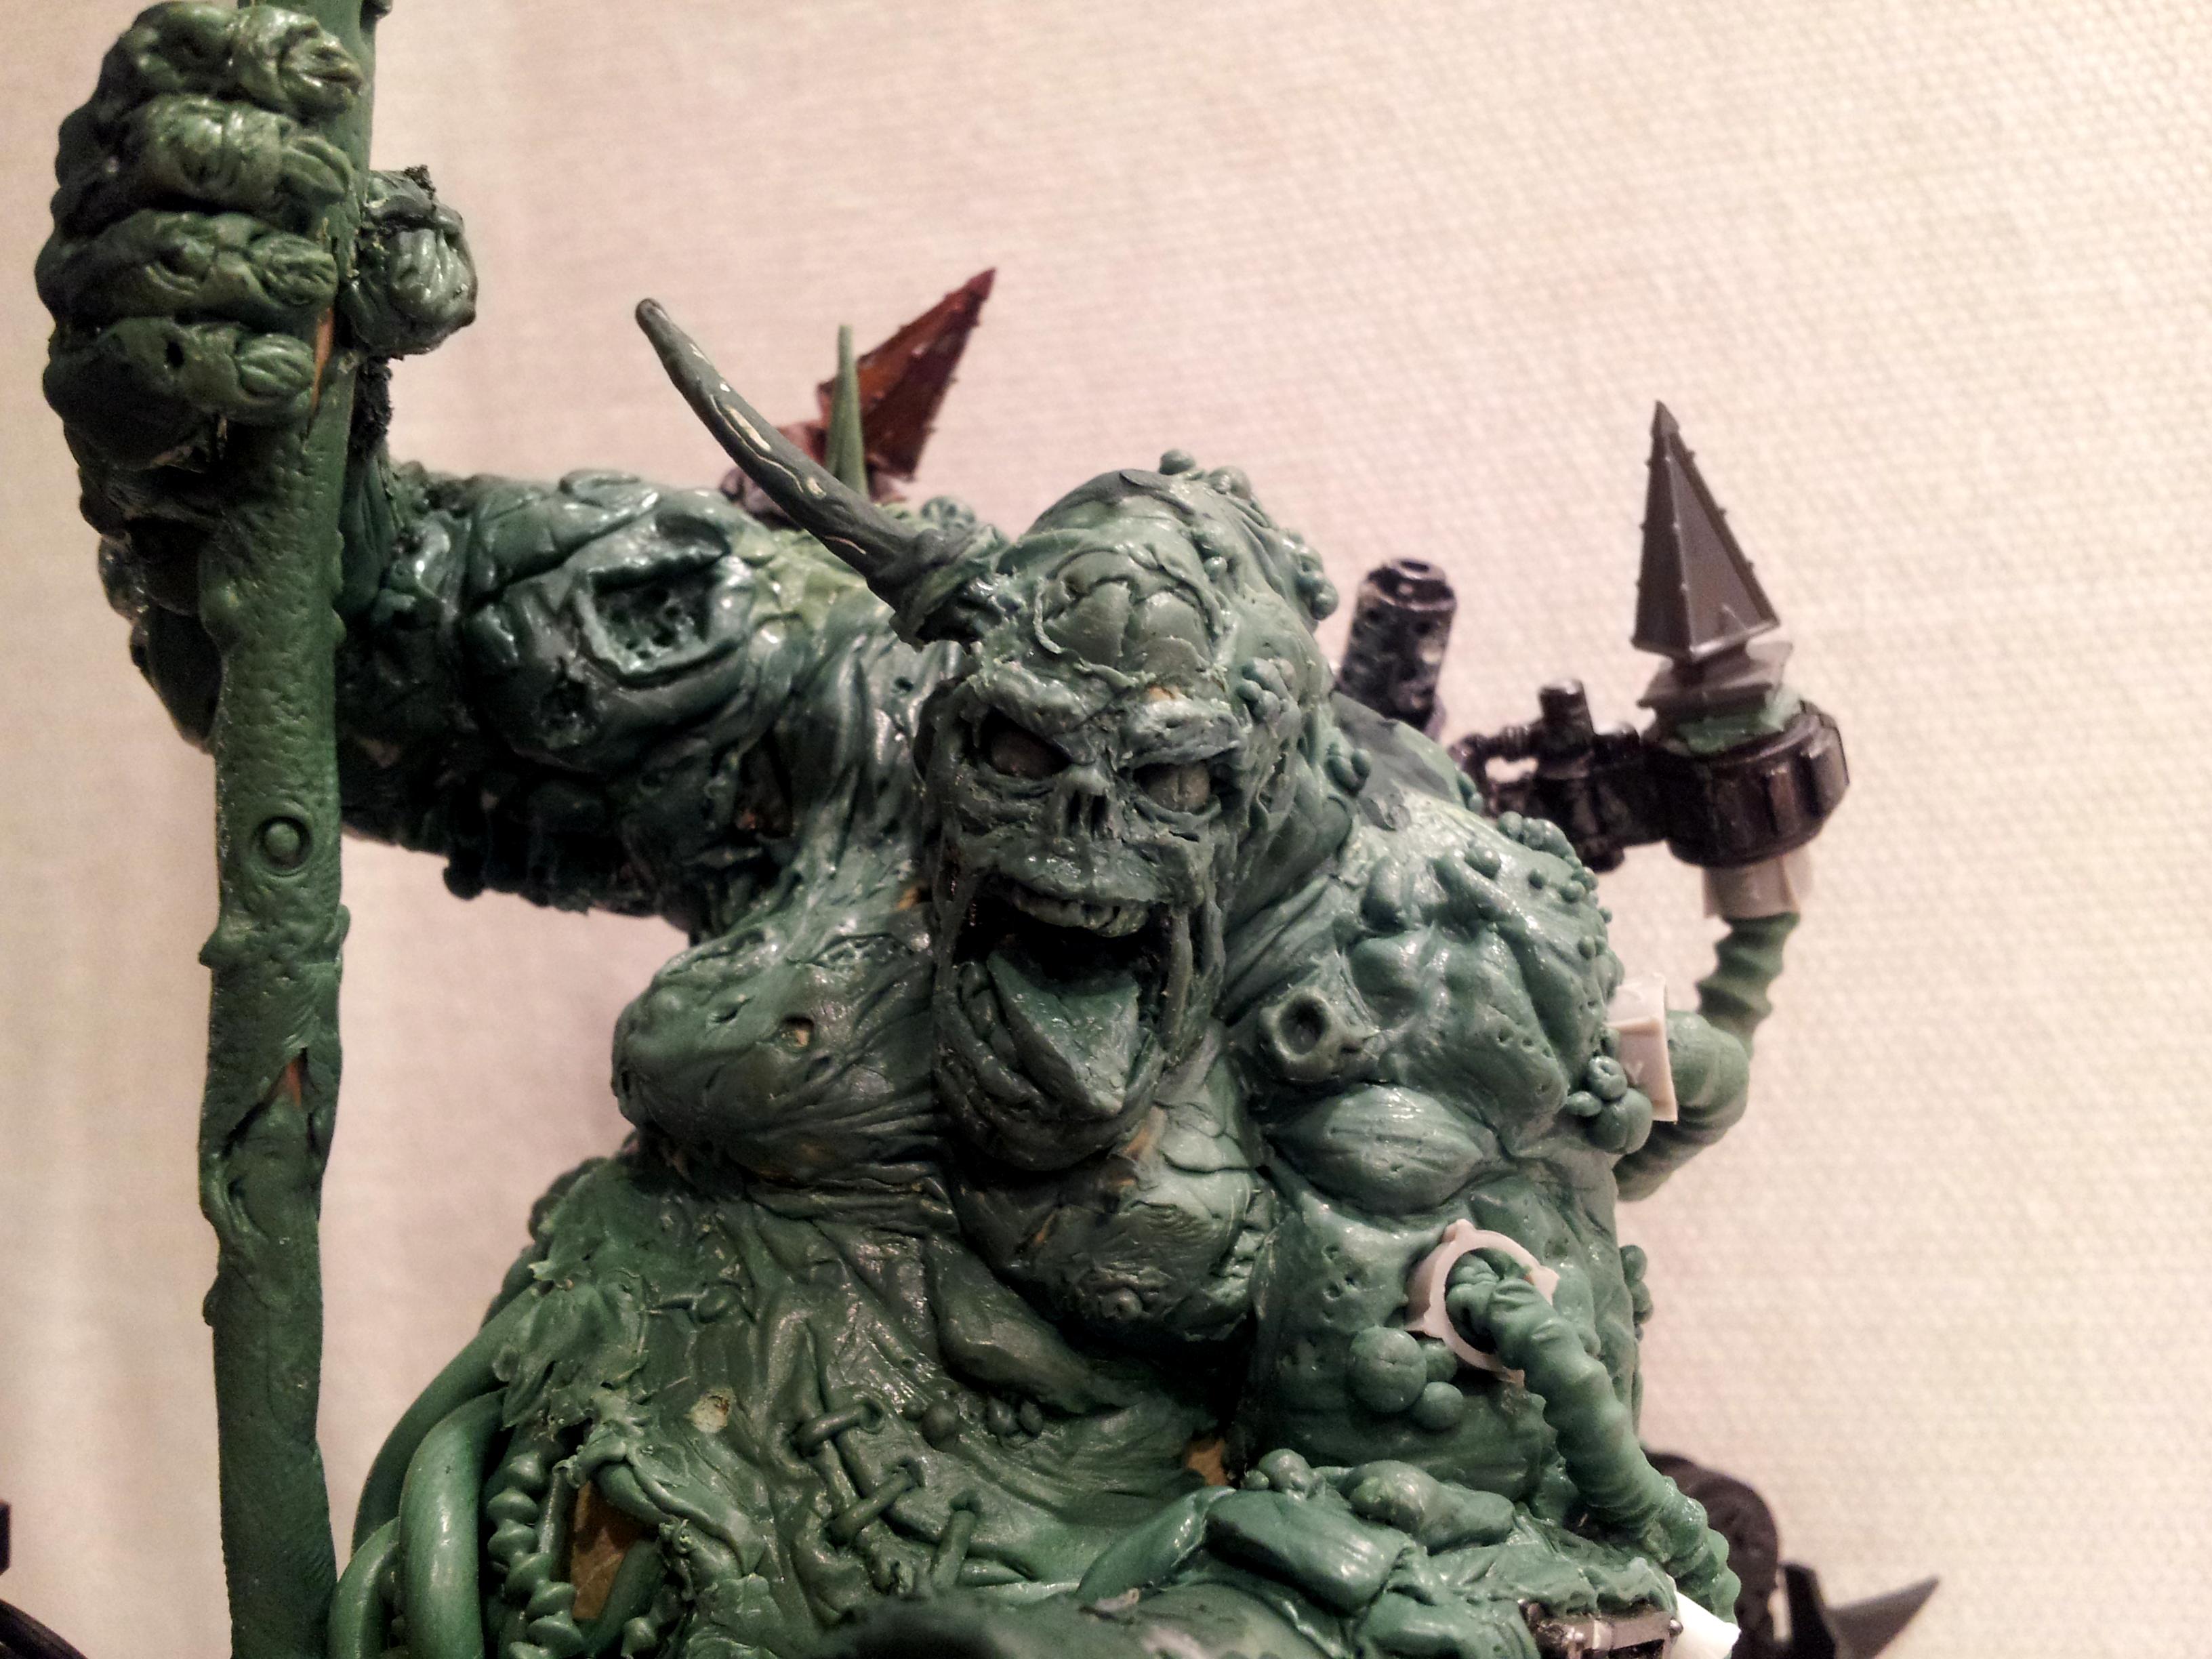 Chaos sculpted Soulgrinder/Defiler/Plaque Hulk